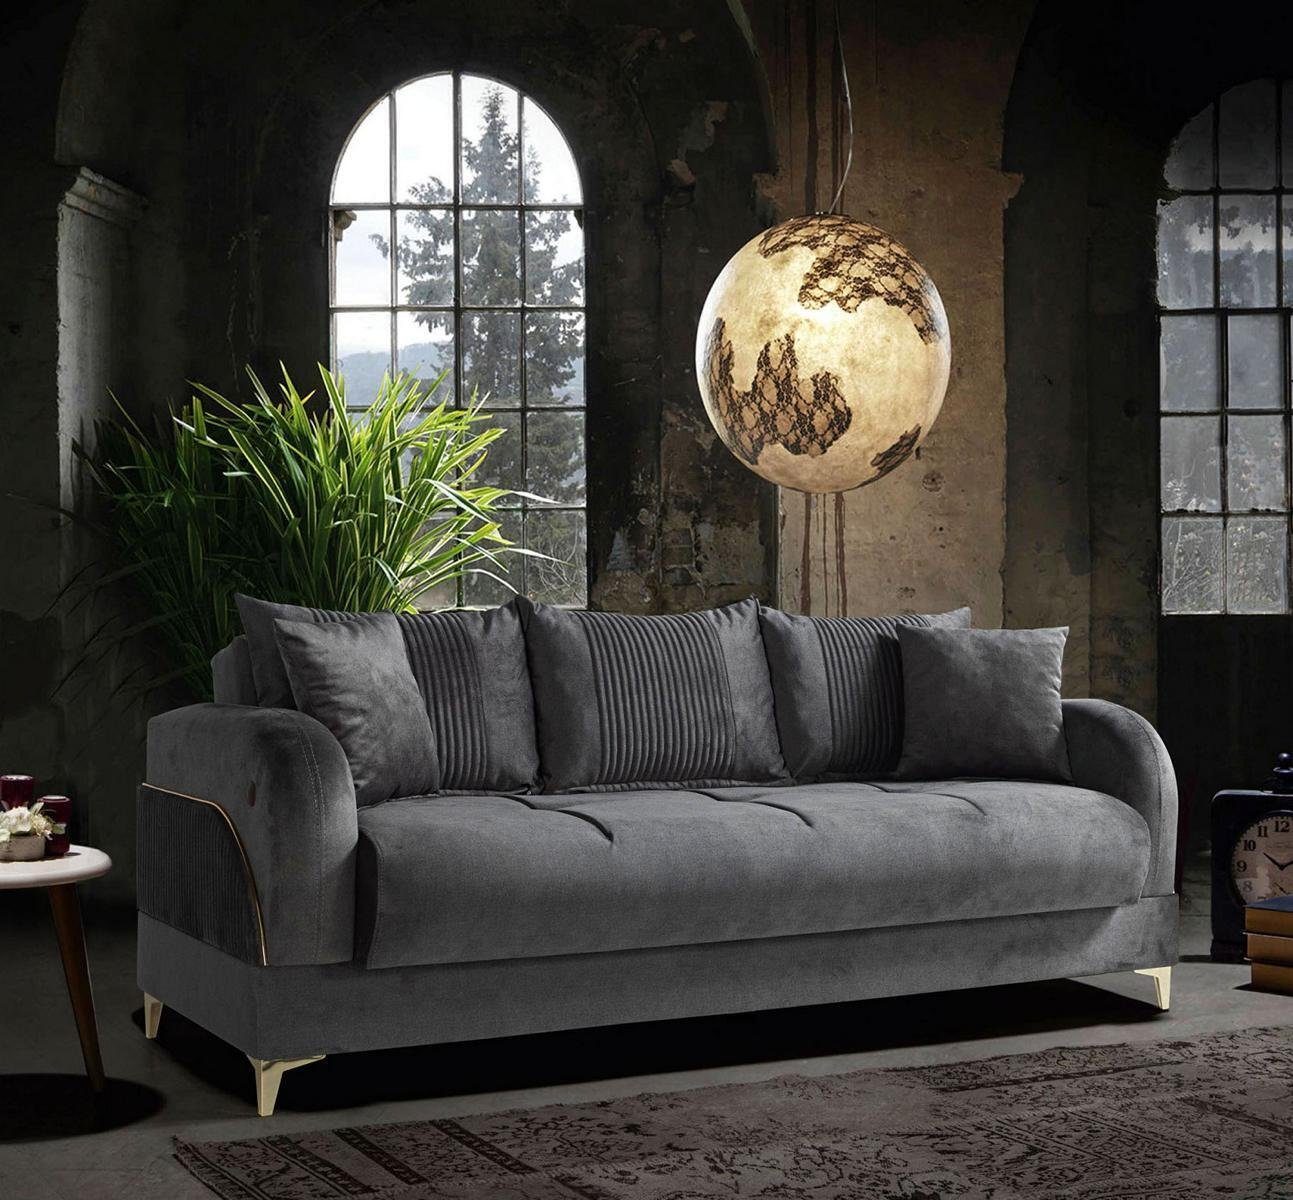 JVmoebel Sofa Graue Dreisitzer Couch Polster Möbel Couchen Stoff Sofas Textil, Made In europe